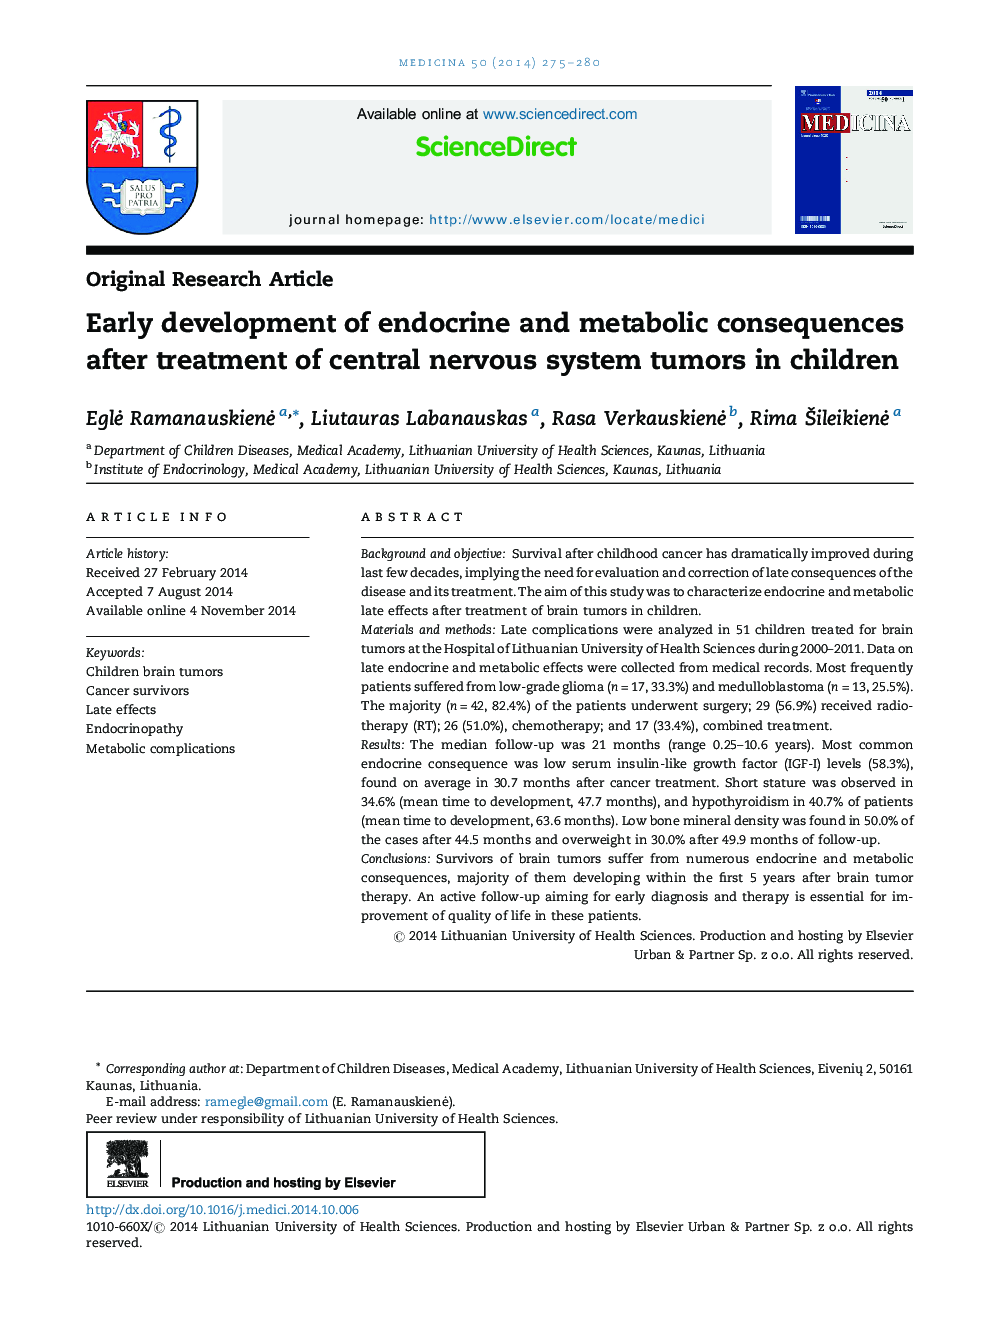 توسعه اولیه عواقب غدد درون ریز و متابولیک پس از درمان تومورهای سیستم عصبی مرکزی در کودکان 